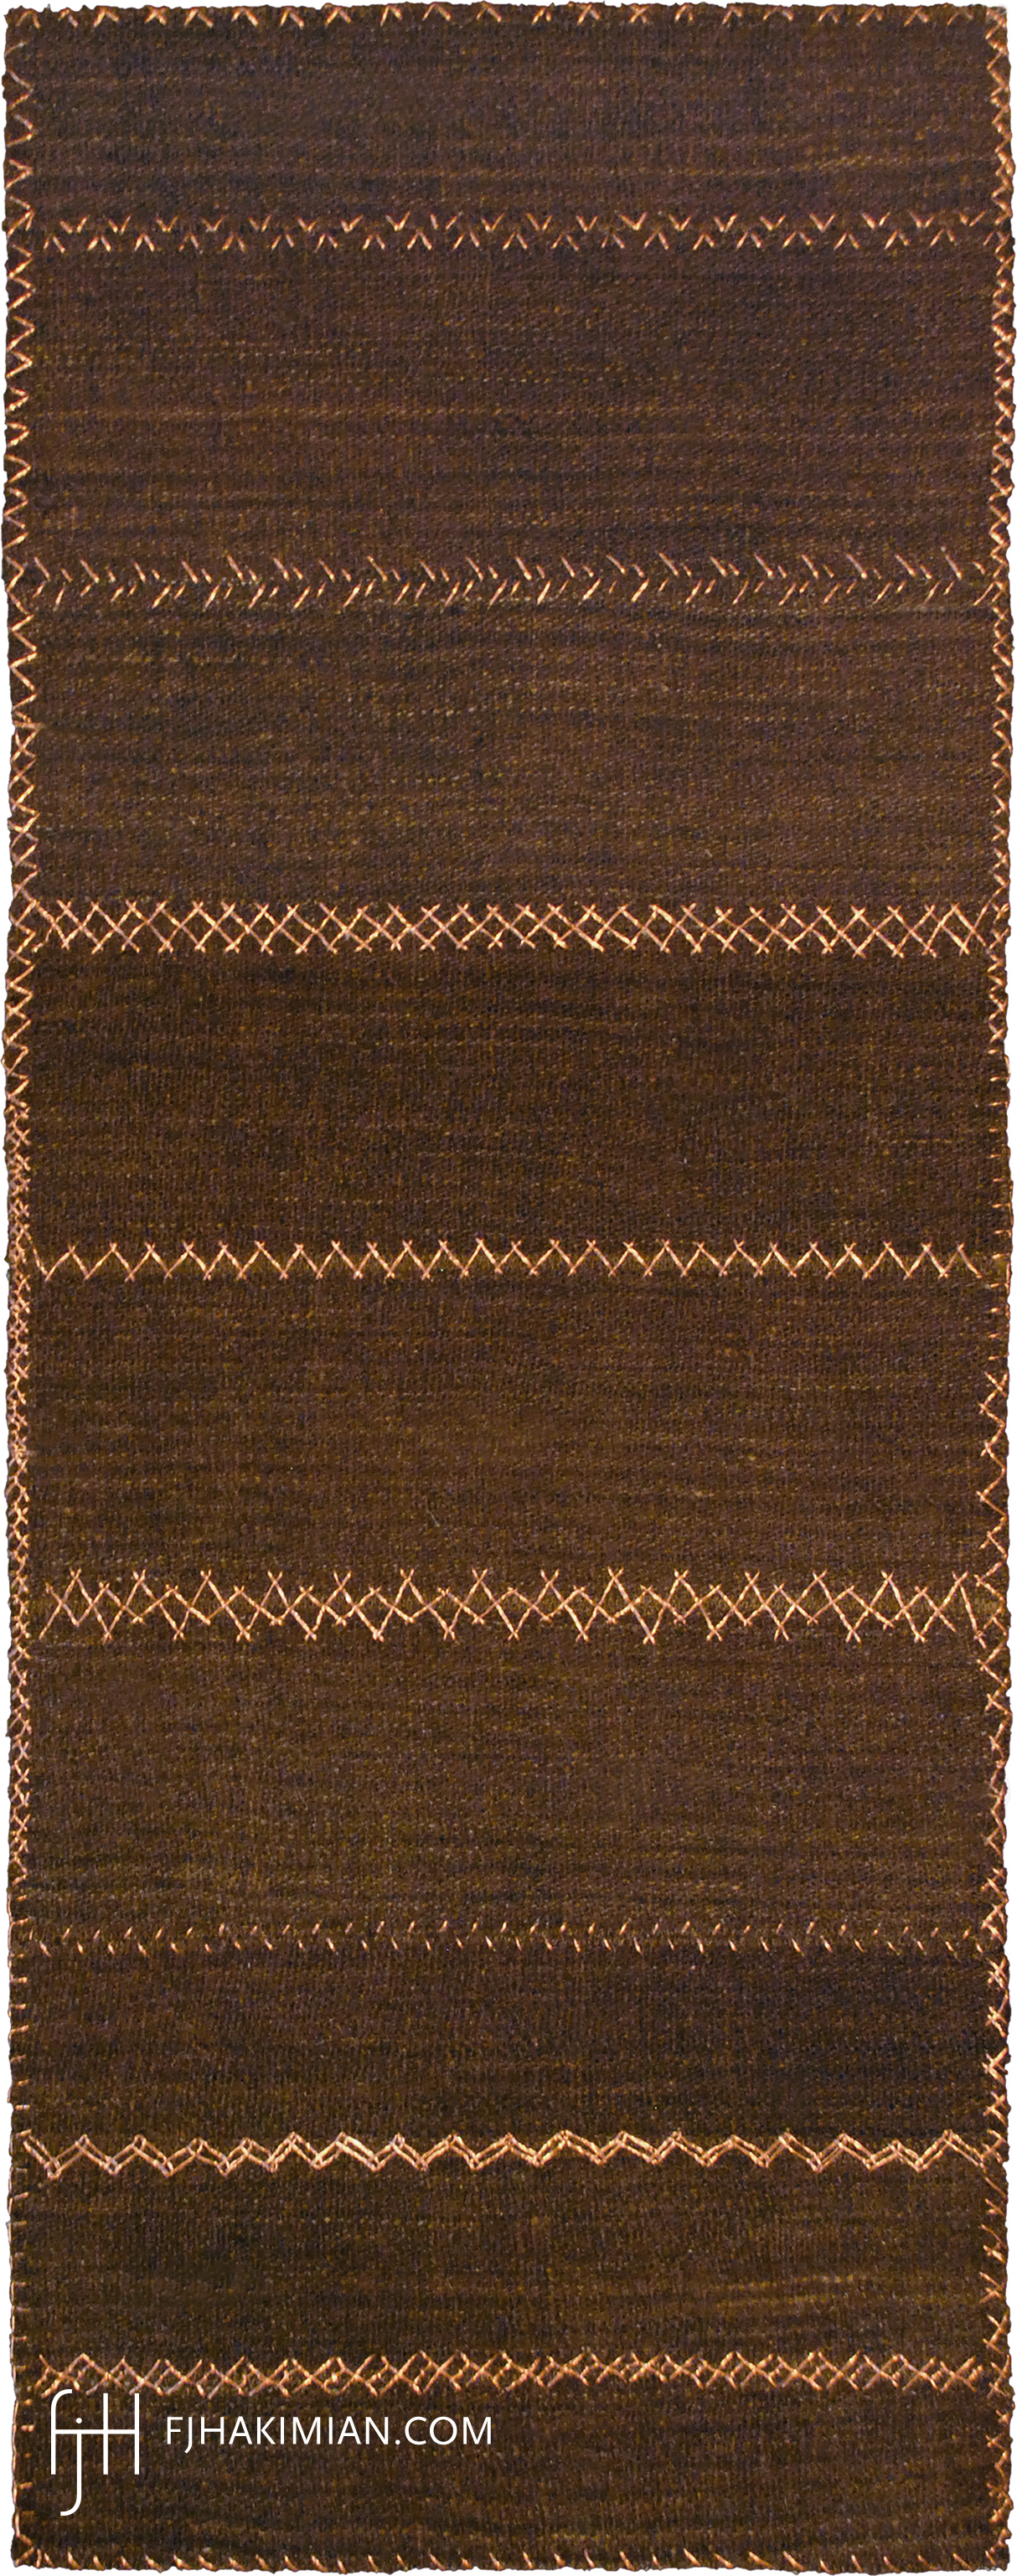 FJ Hakimian | 27497 | Custom Carpet